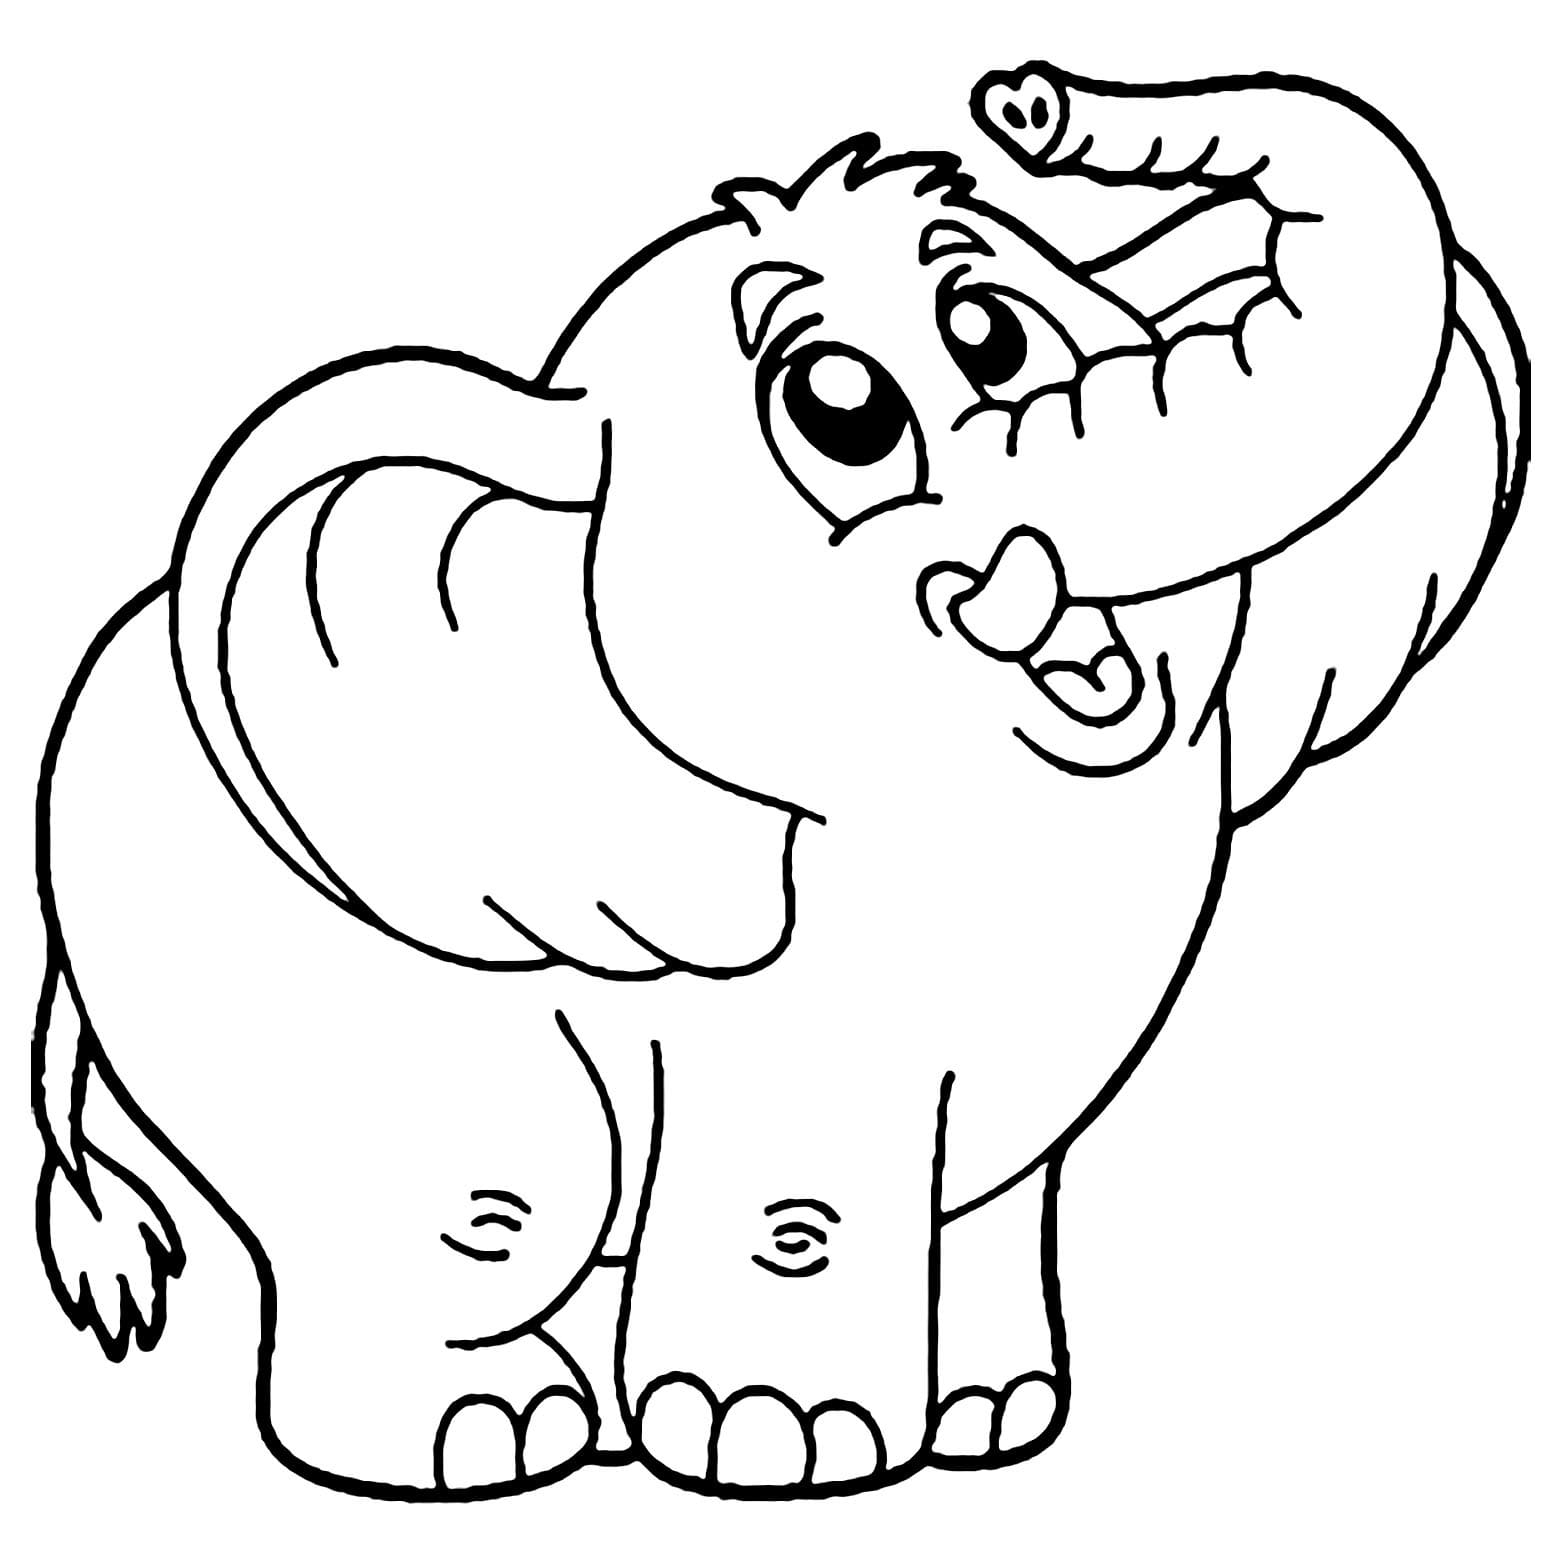 인쇄 가능한 귀여운 아기 코끼리 coloring page